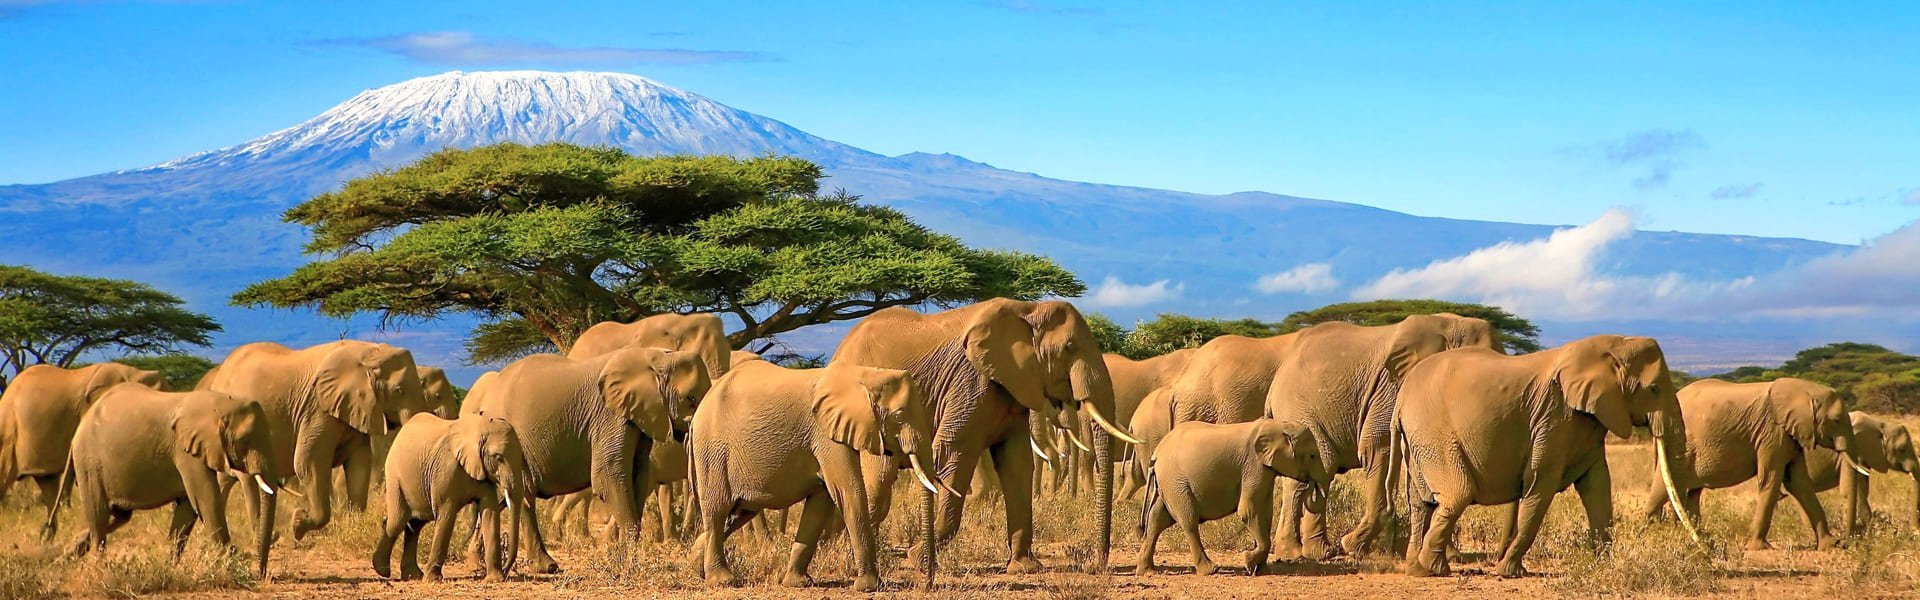 Uitzicht op de Kilimanjaro vanuit Tanzania, met olifanten